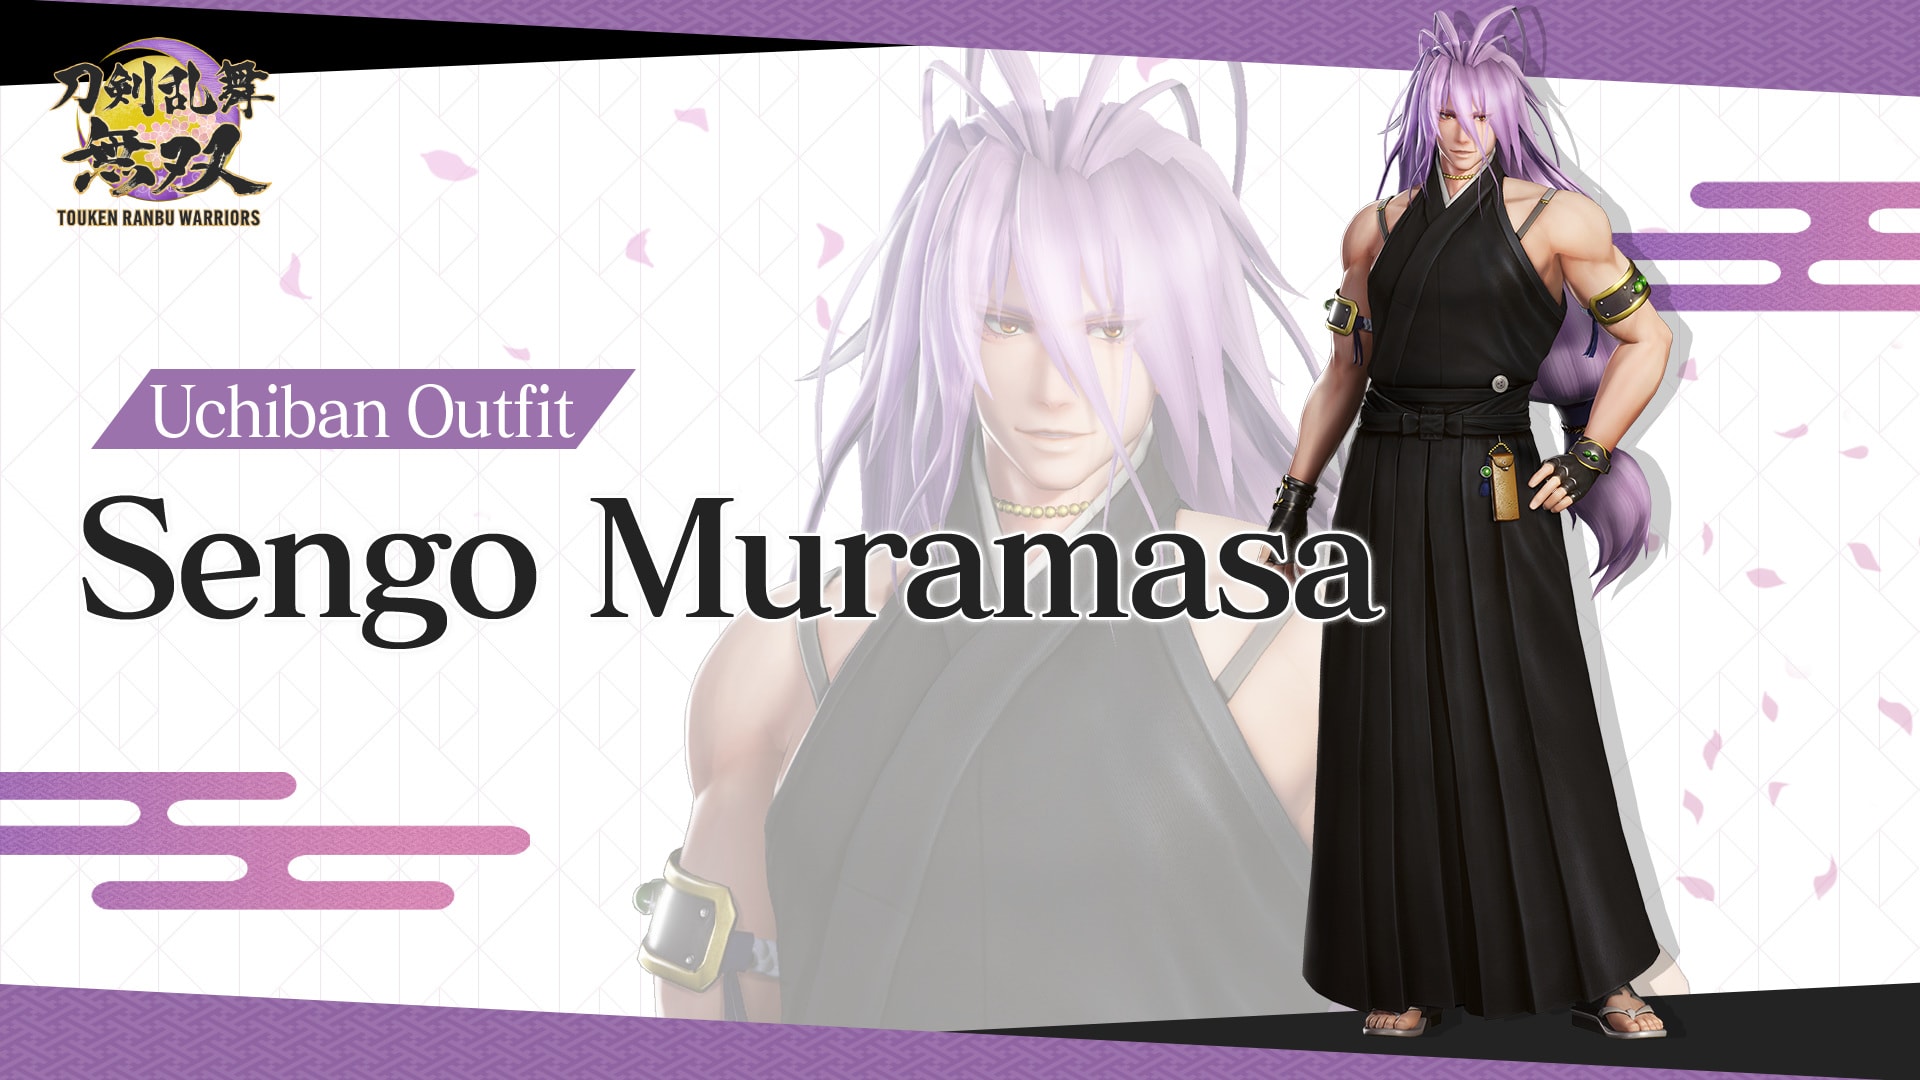 Uchiban Outfit "Sengo Muramasa"